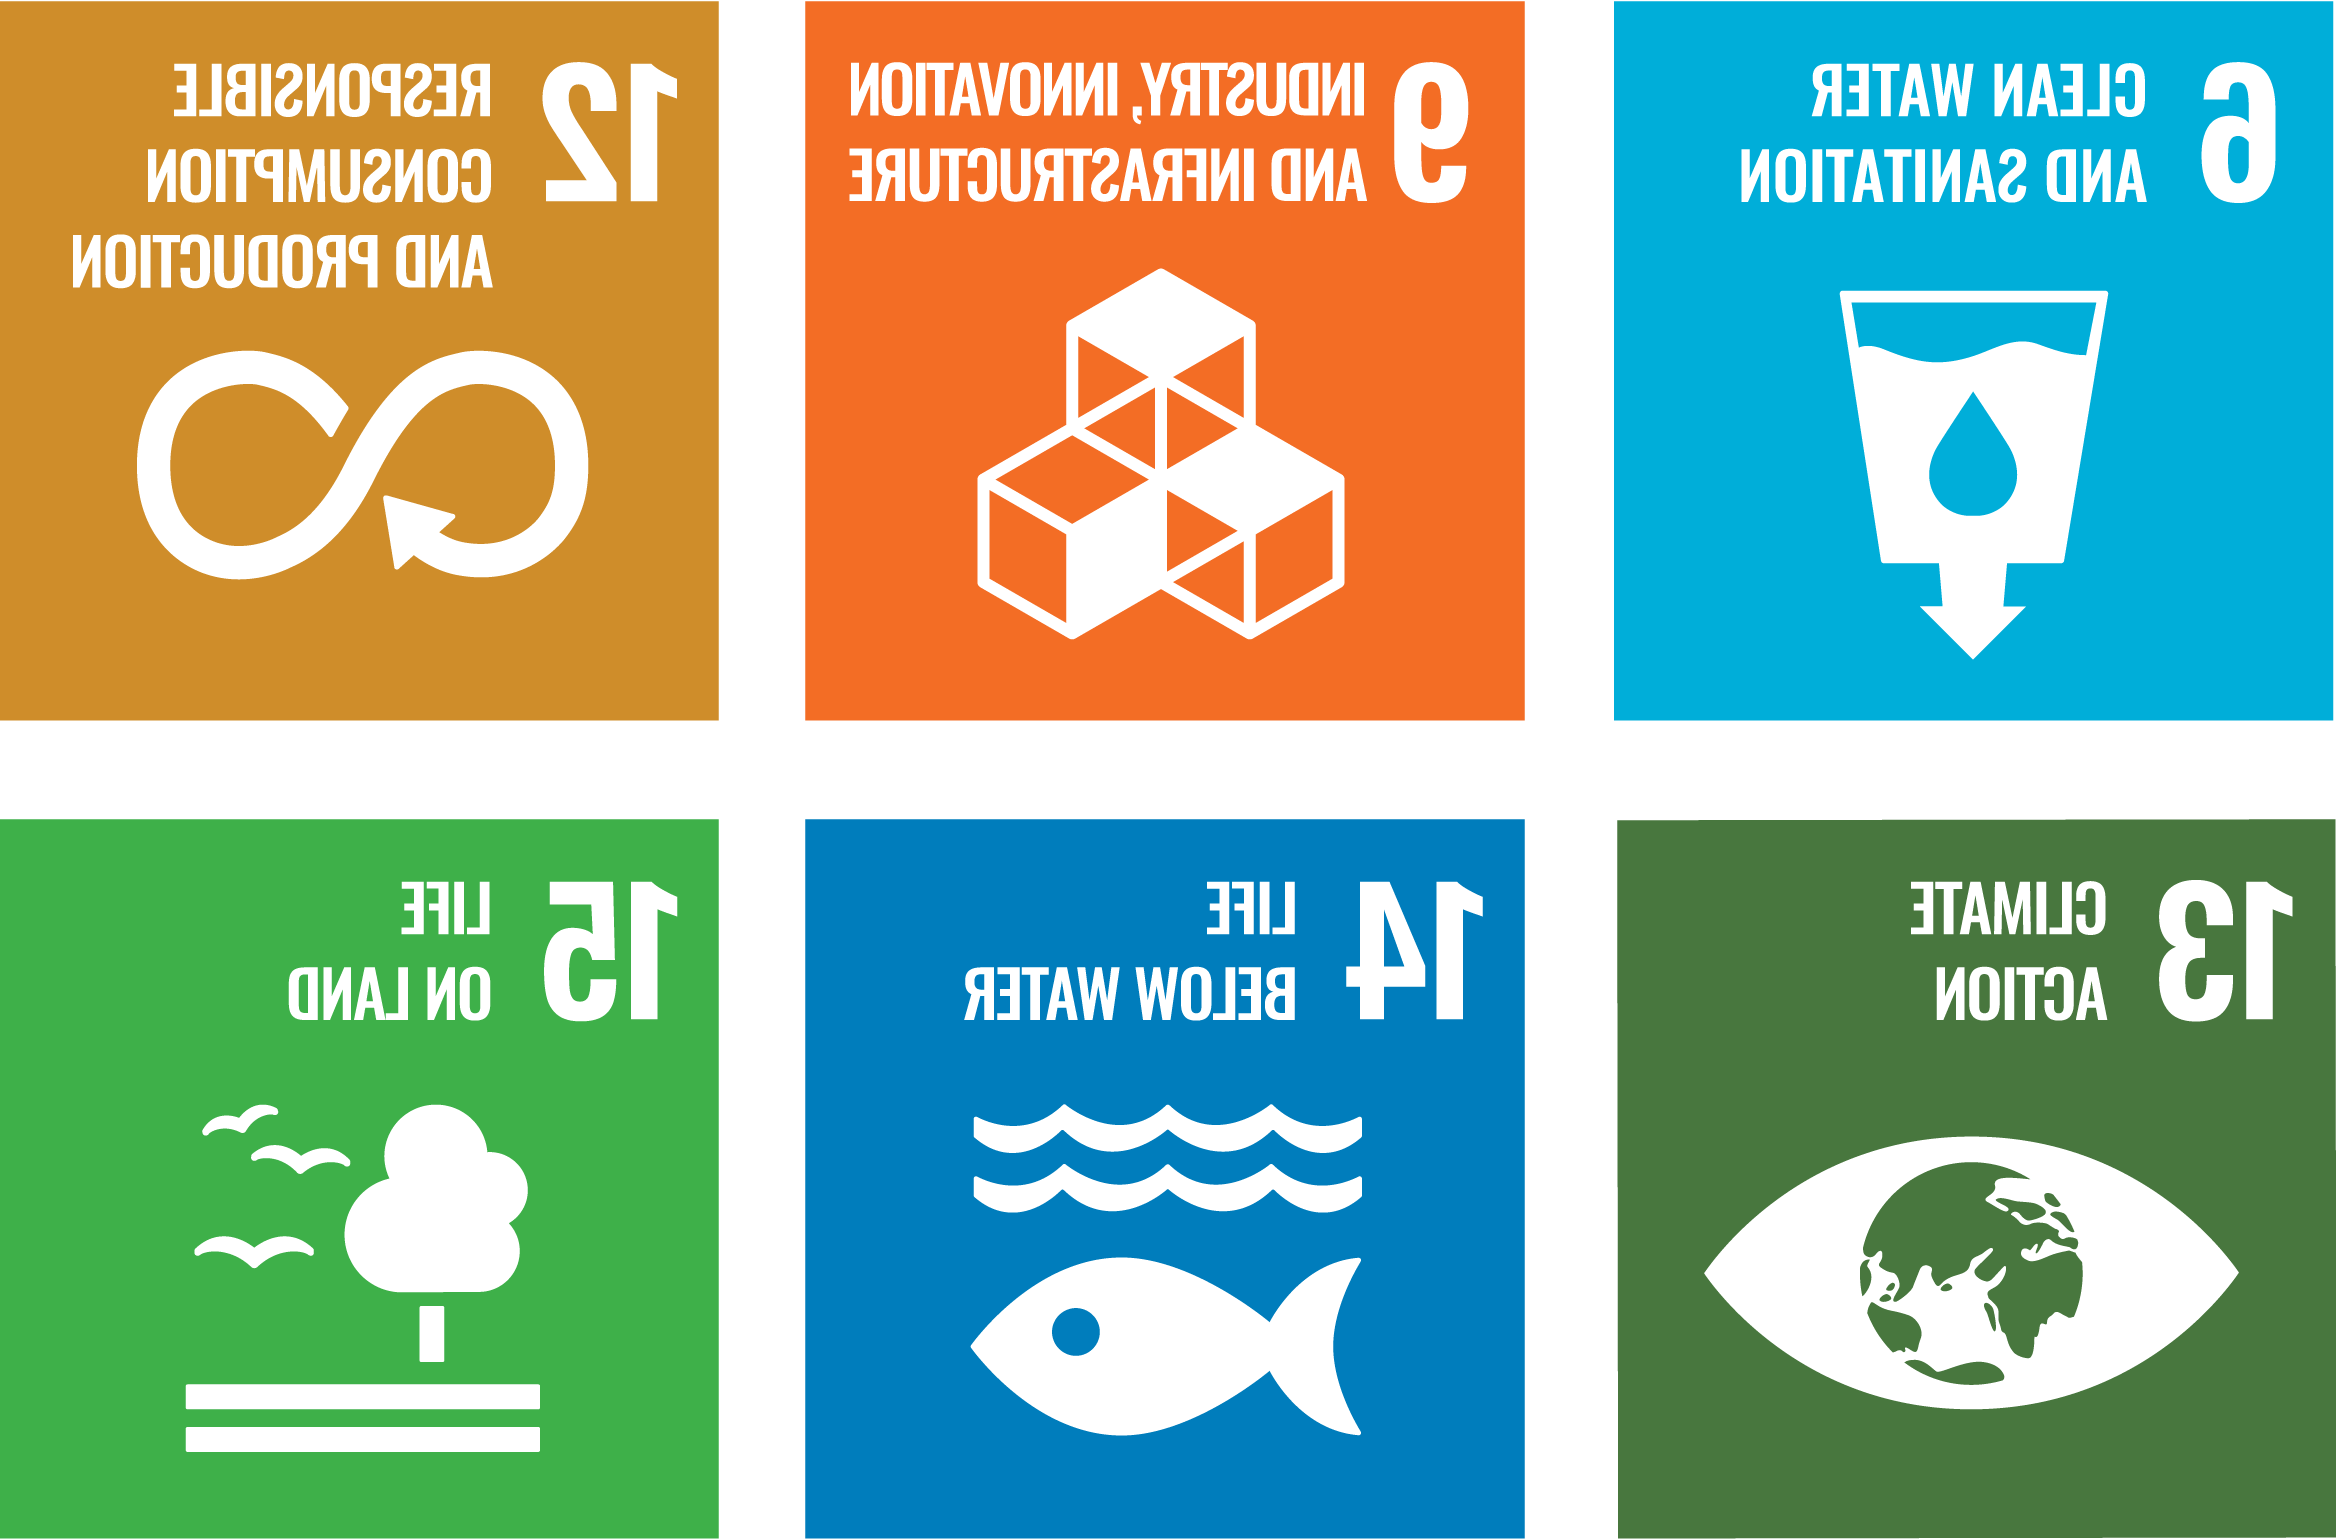 代表联合国可持续发展目标6、9、12、13、14和15的图标.